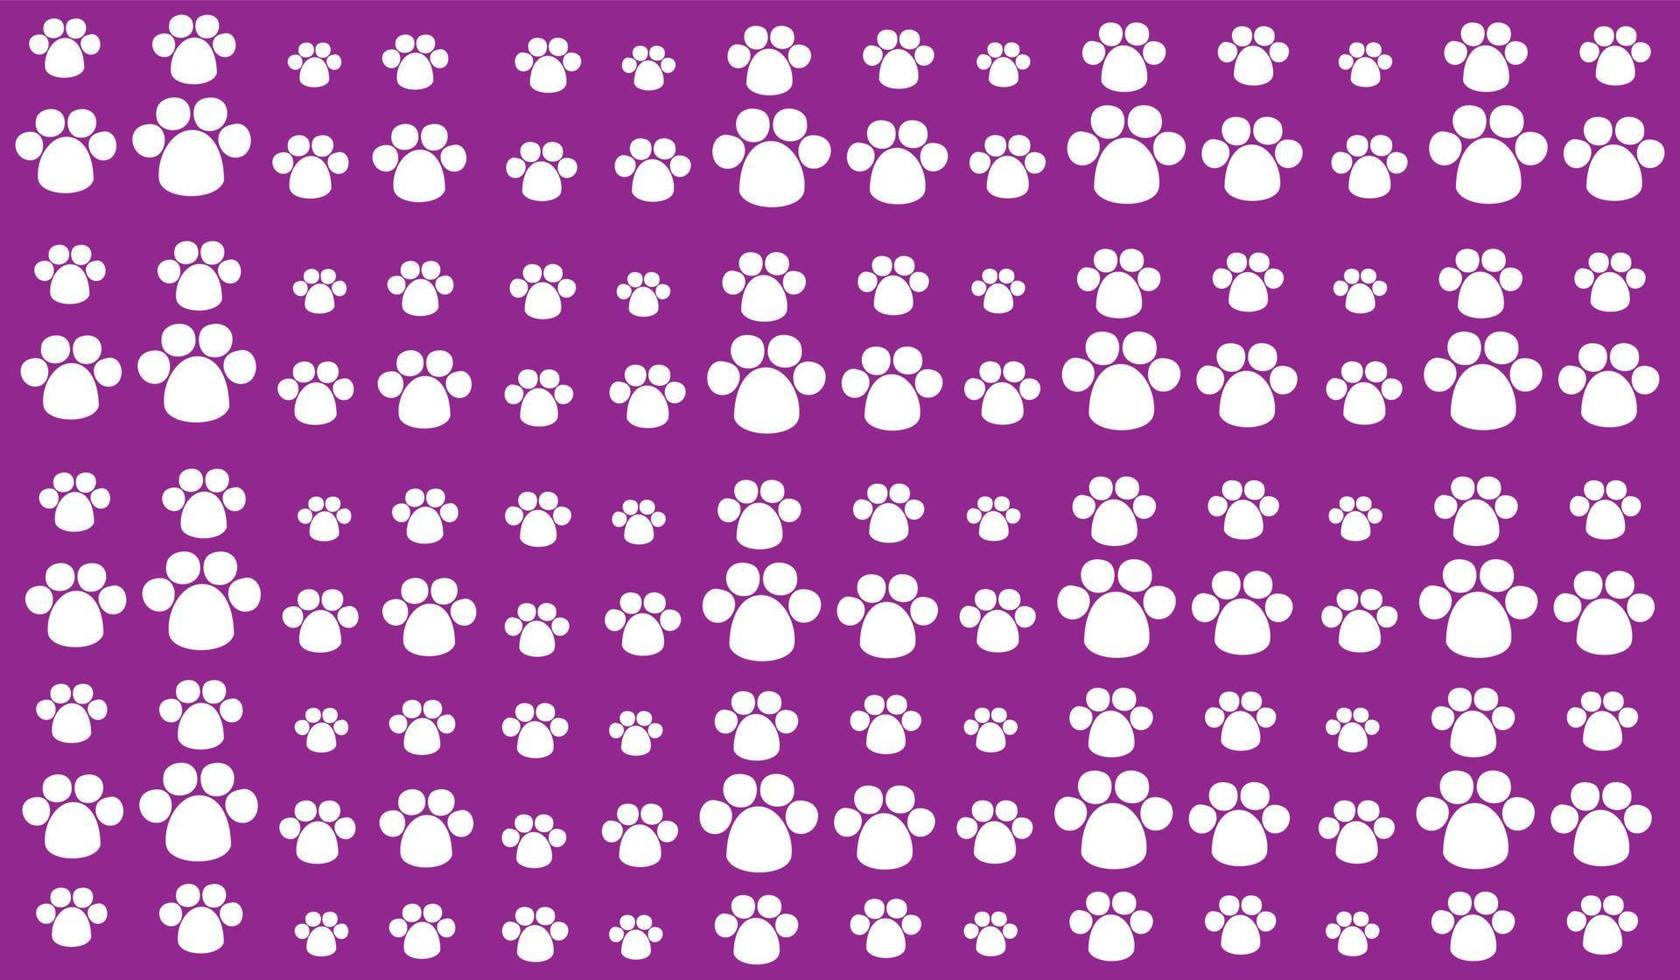 patrón de fondo transparente de símbolos de mascotas blancos uniformemente espaciados de diferentes tamaños y opacidad. ilustración vectorial sobre fondo morado vector